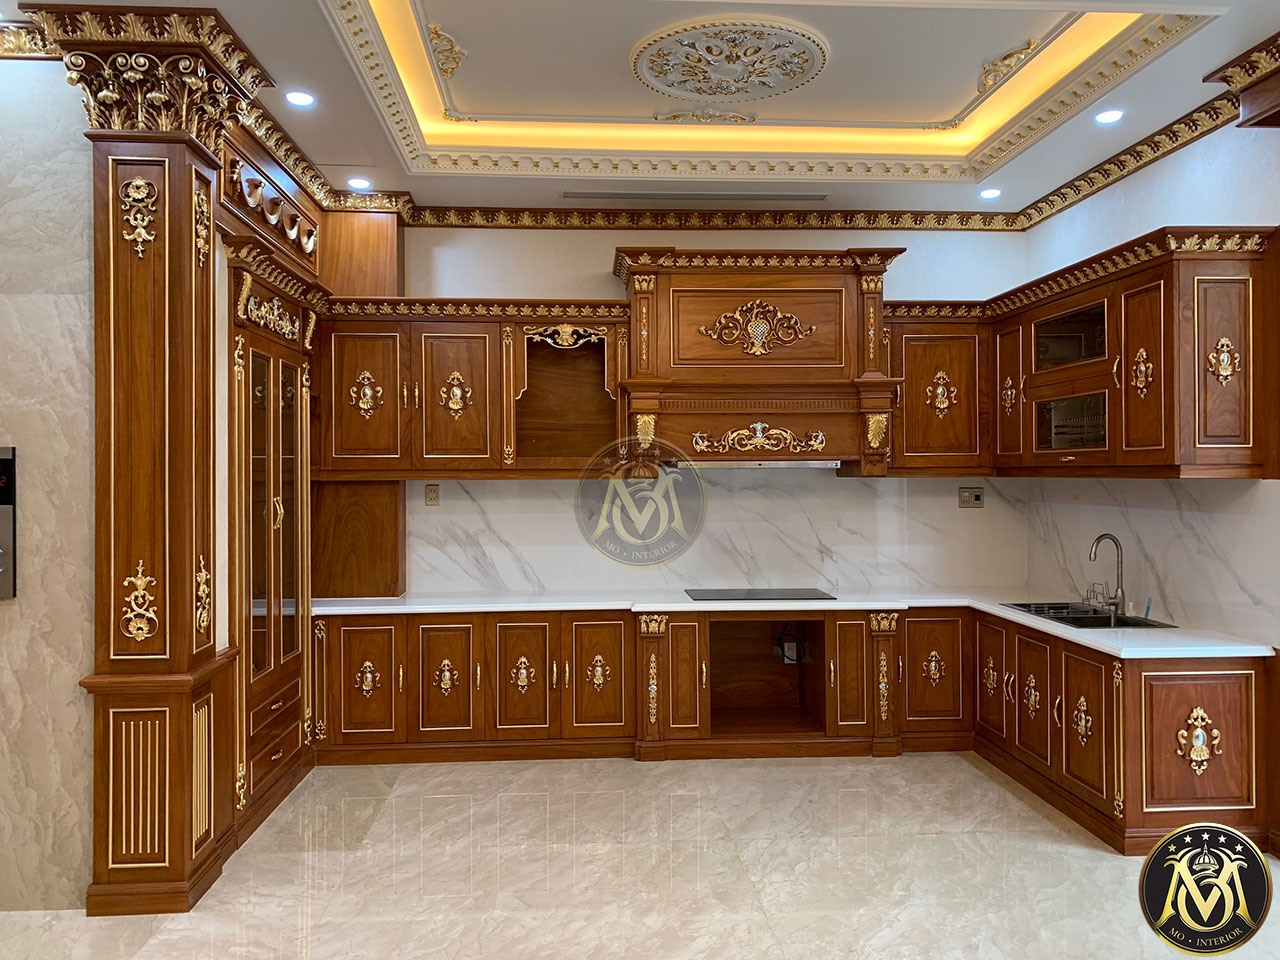 Với tủ bếp tân cổ điển được bày trí đầy tinh tế và mỹ thuật, chắc chắn sẽ mang đến cho gia đình bạn sự tươi mới và phong cách trong căn bếp của mình.